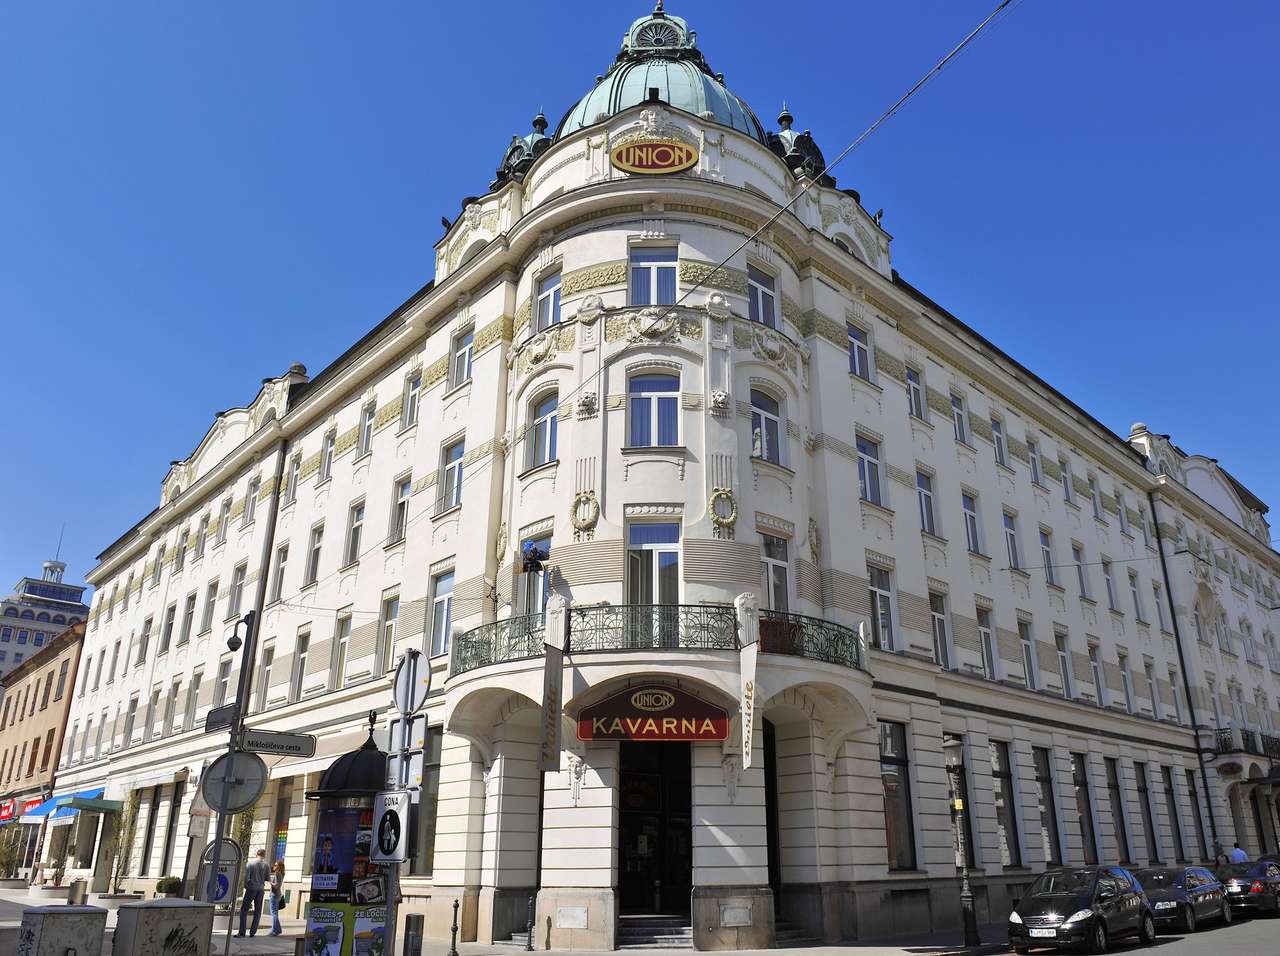 Ljubljana Grand Hotel Union Slovenia puzzle online